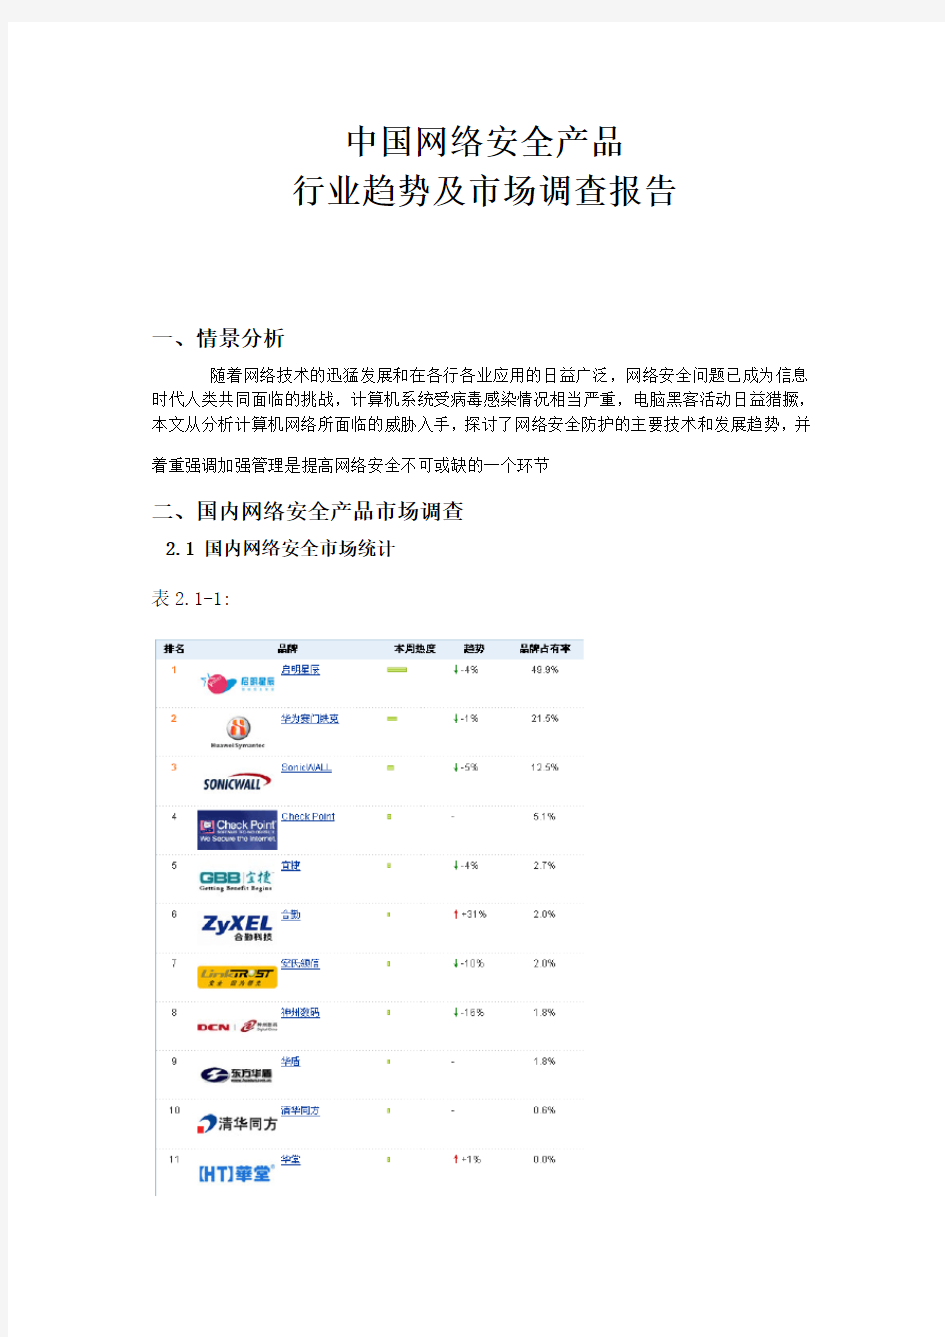 中国网络安全产品行业趋势及市场调查报告